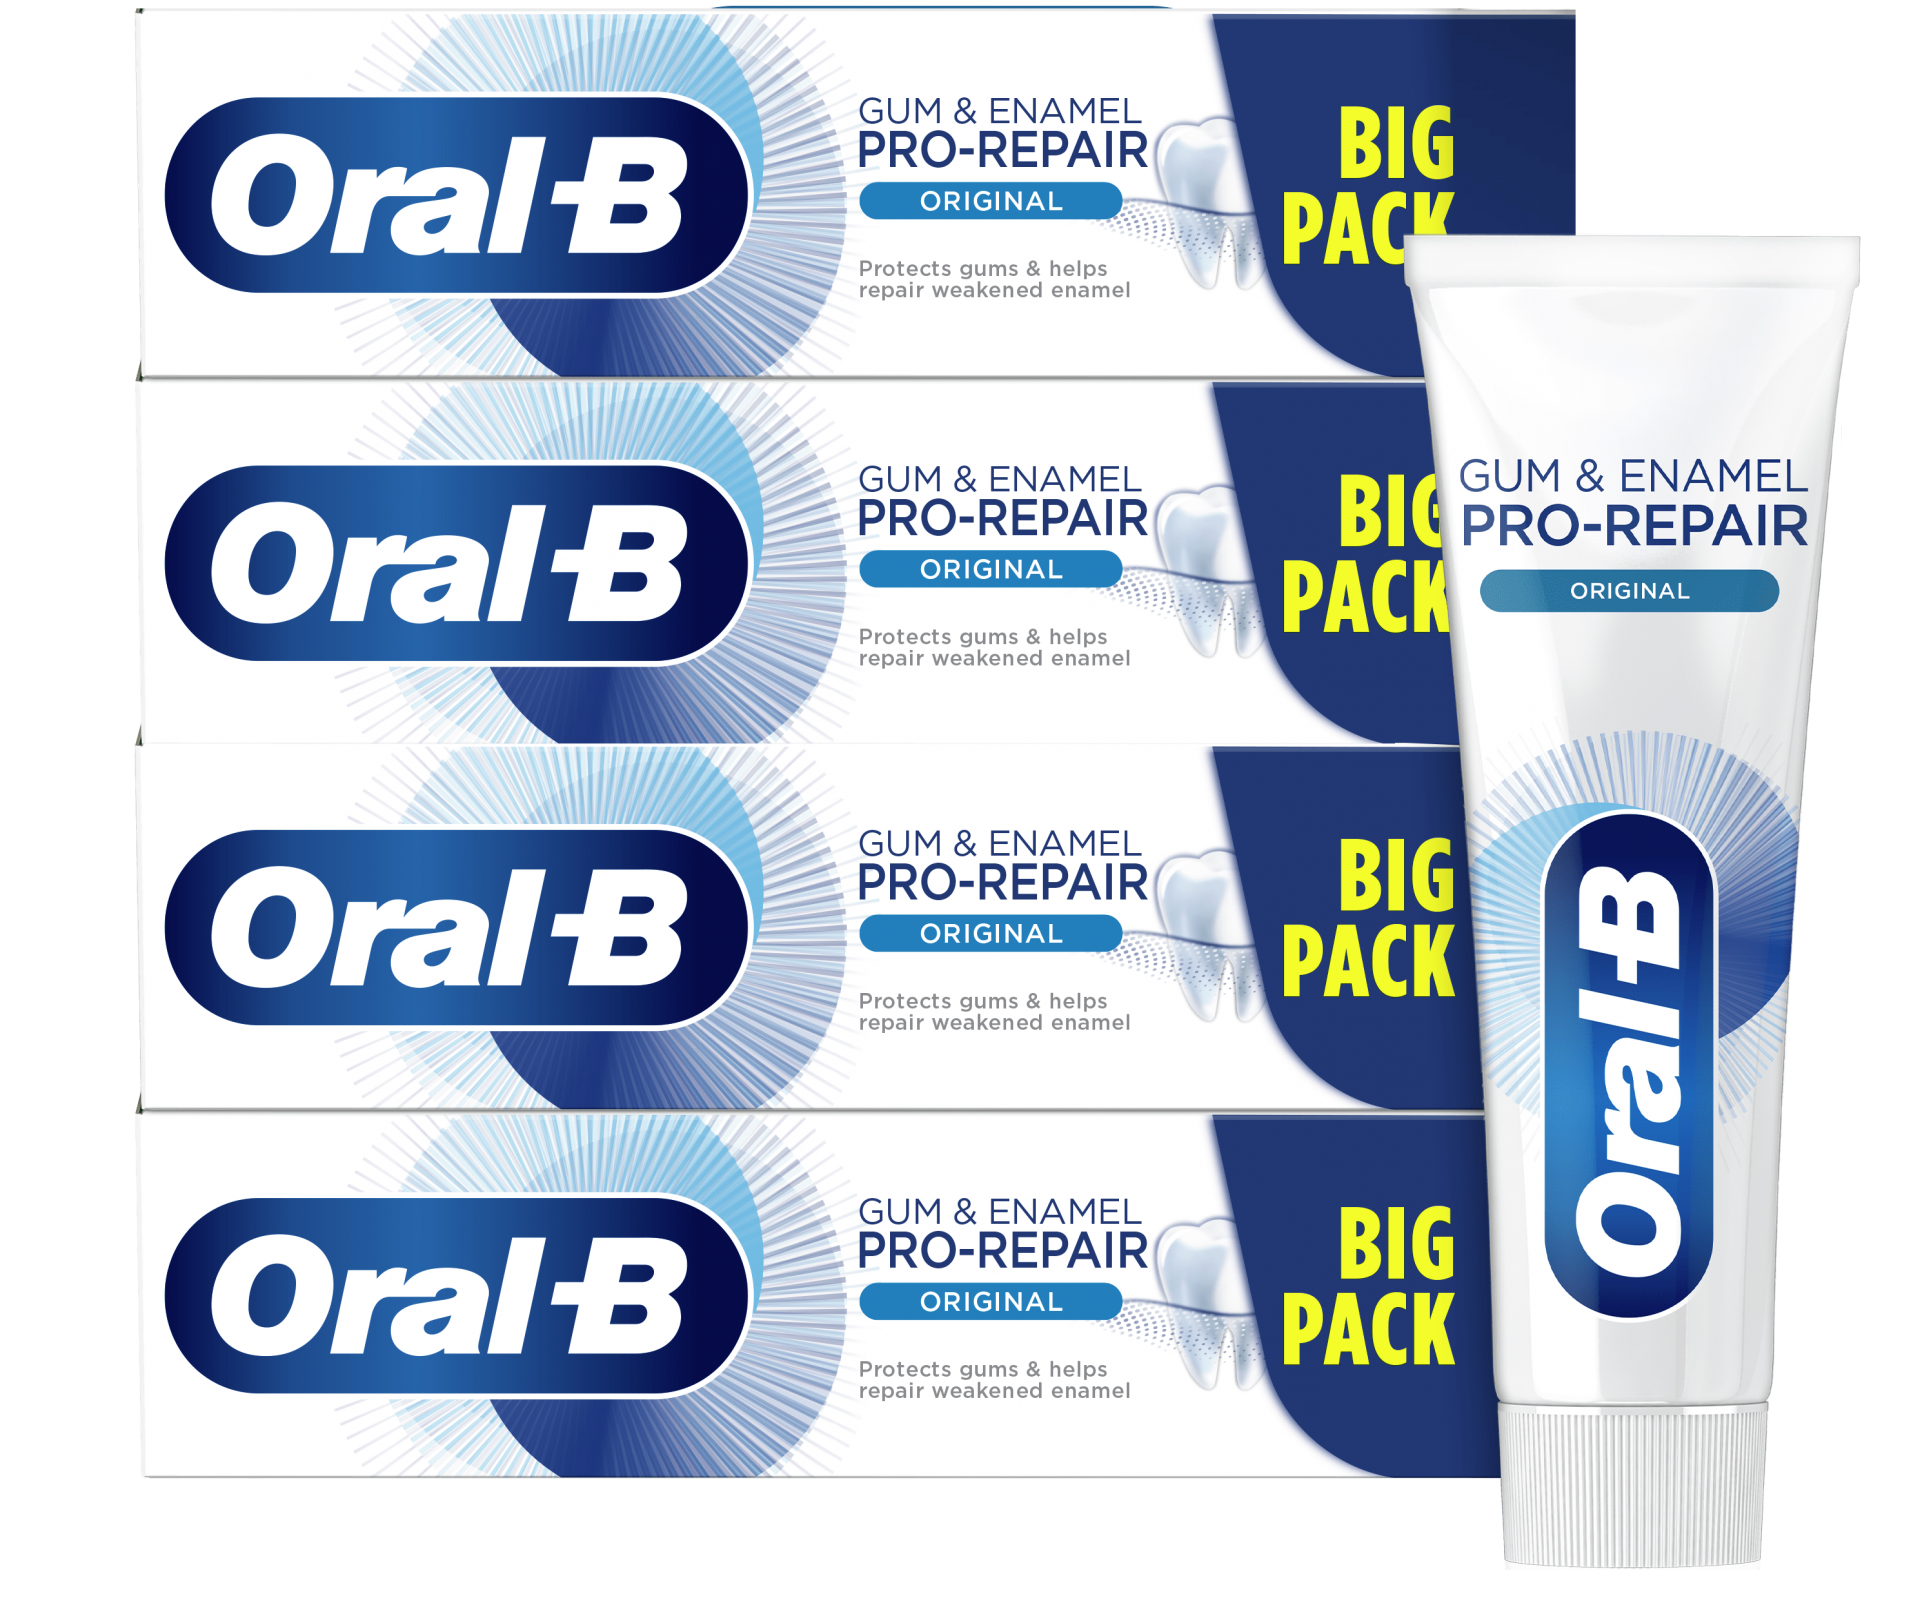 Oral-B Professional dentifricio Gengive&Smalto classico 75ml